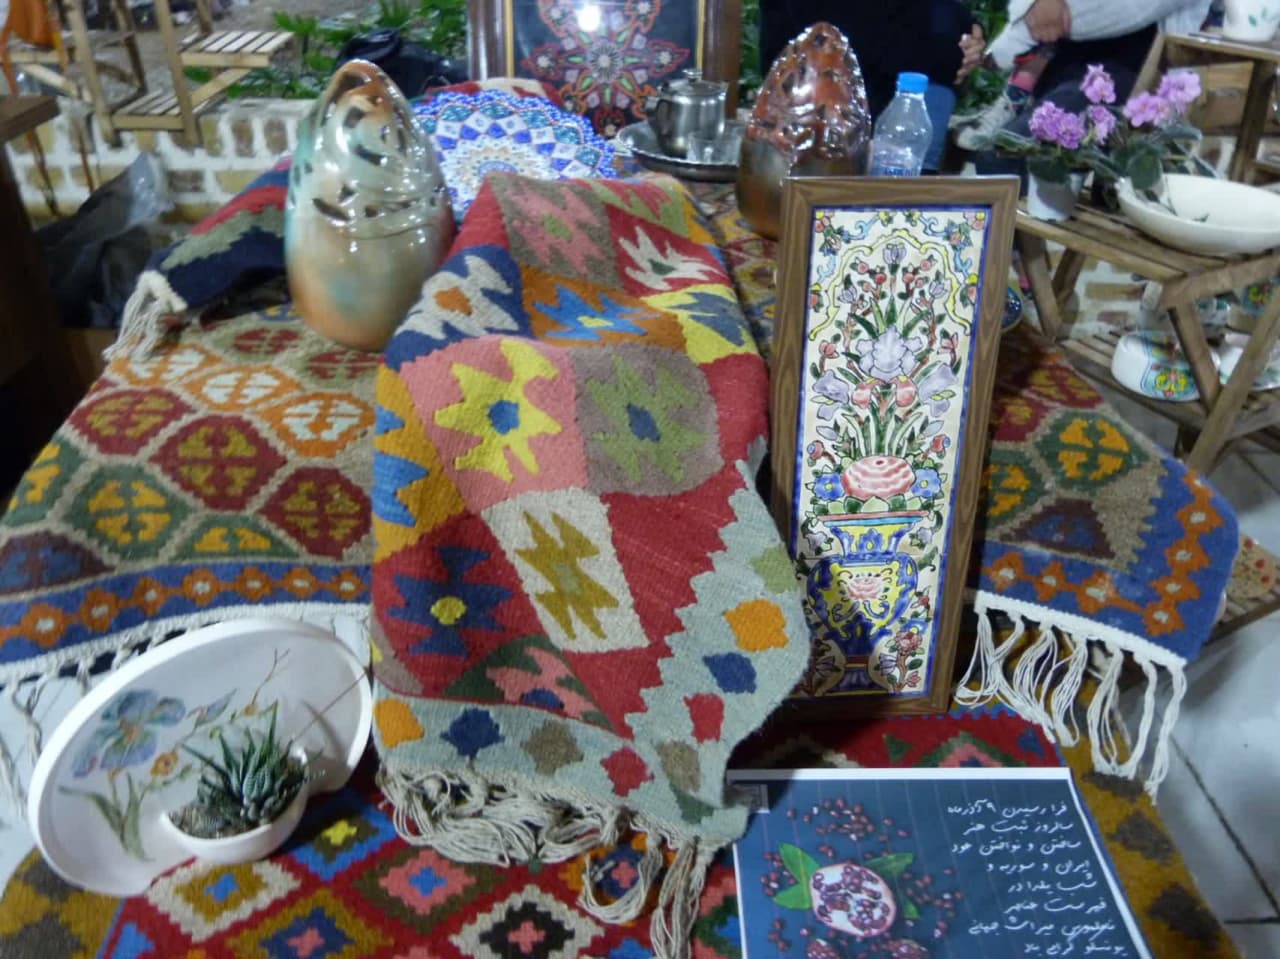 جشنواره خرمالو در کرج برگزار شد